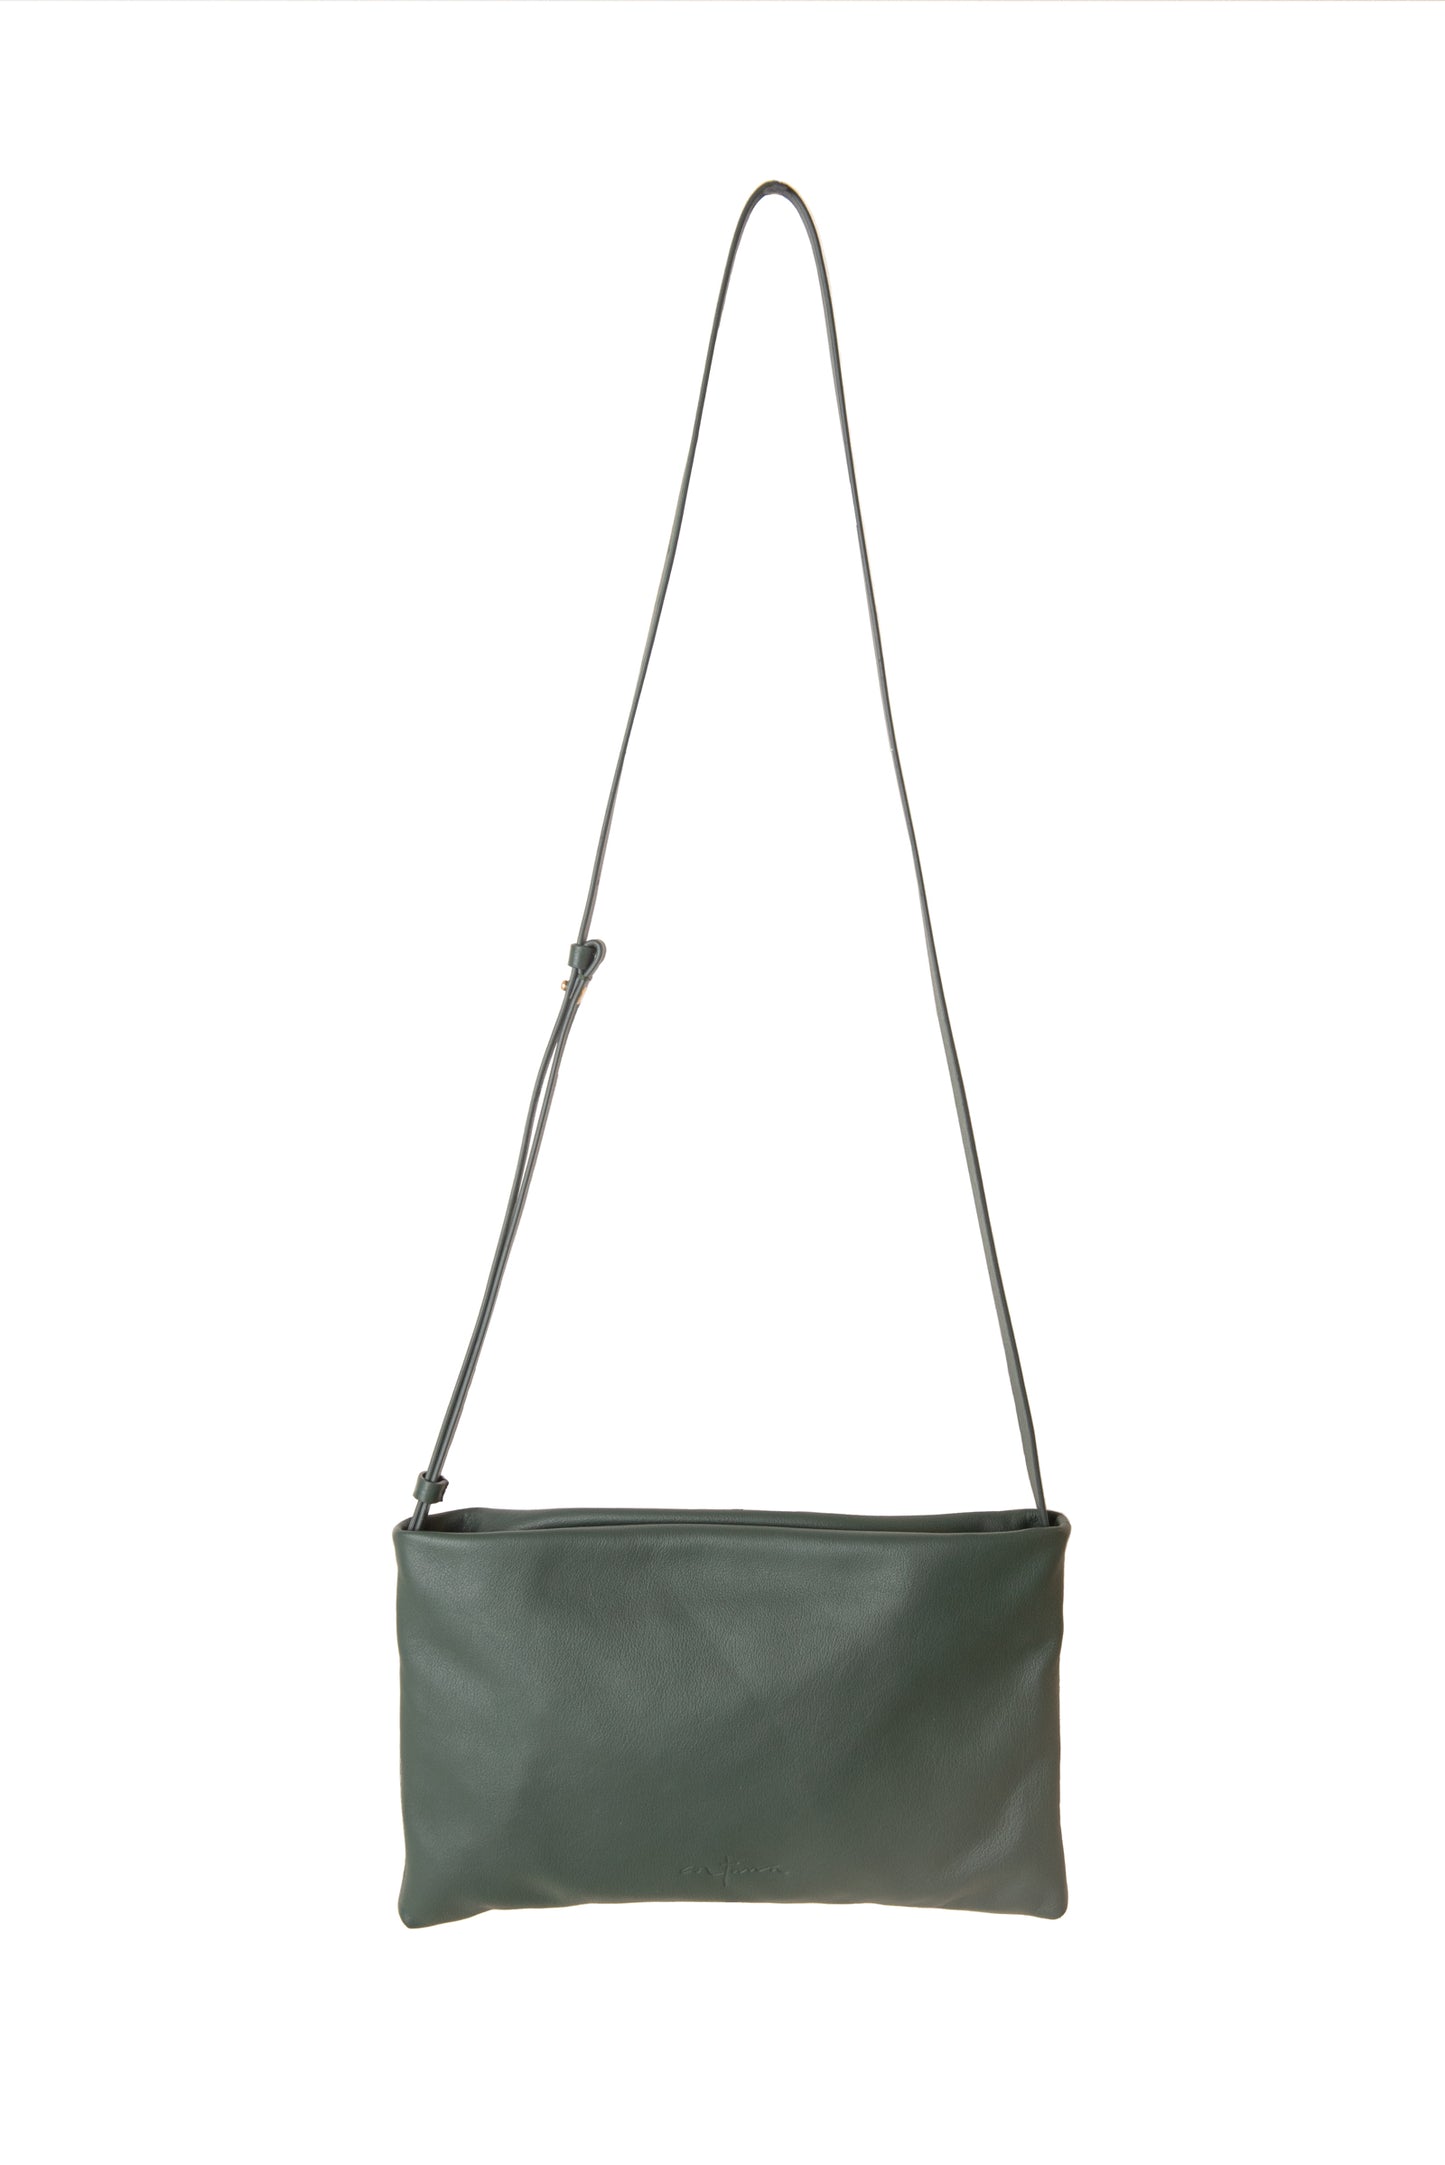 Myla, green leather shoulder bag